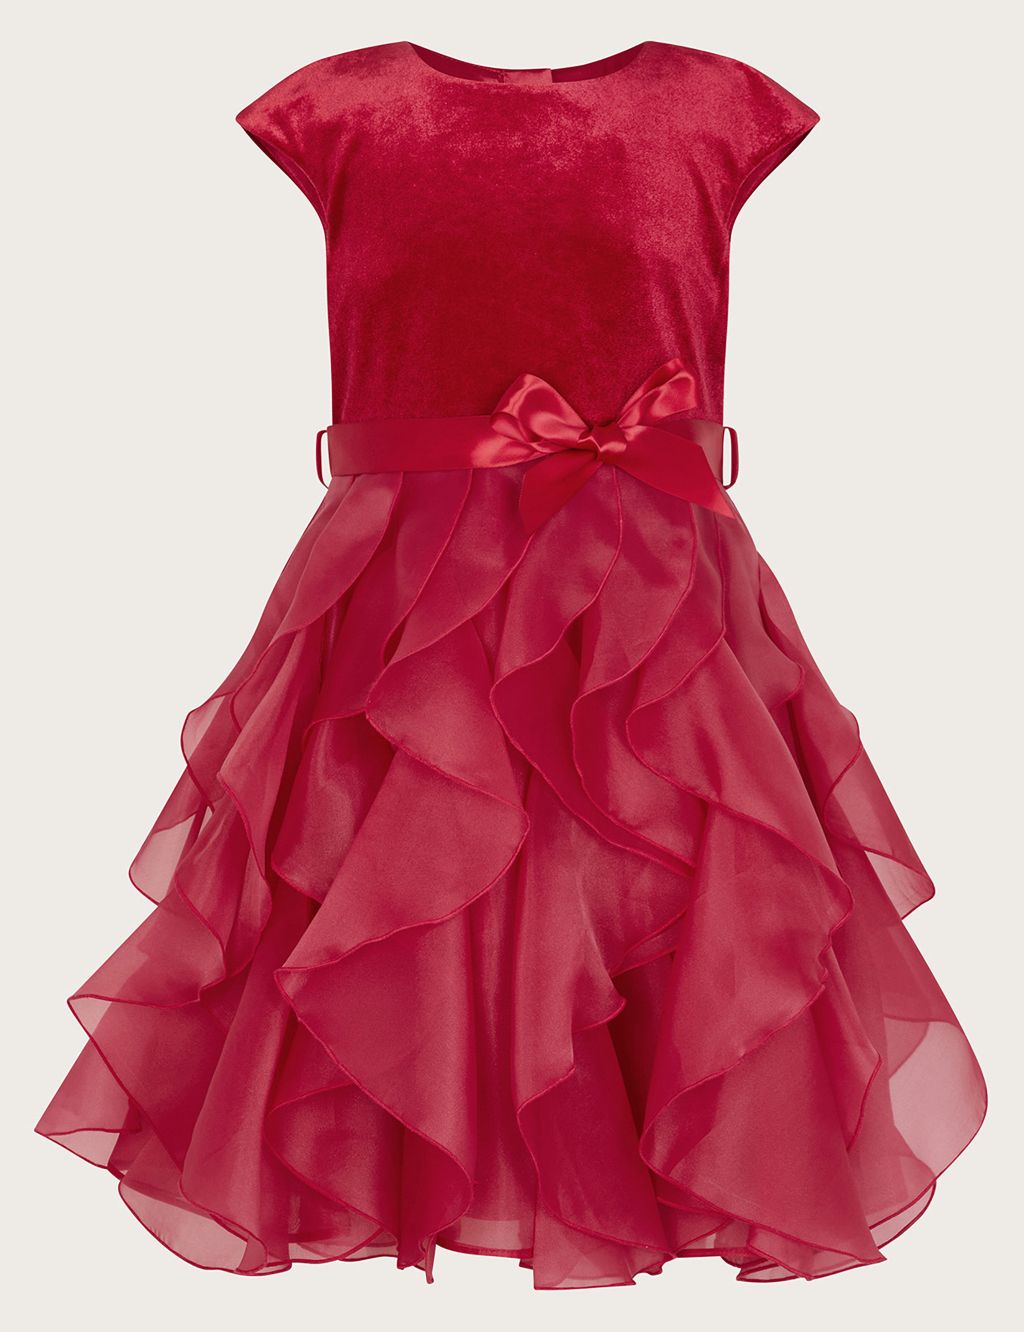 Velvet Tulle Occasion Dress (3-15 Yrs) image 1